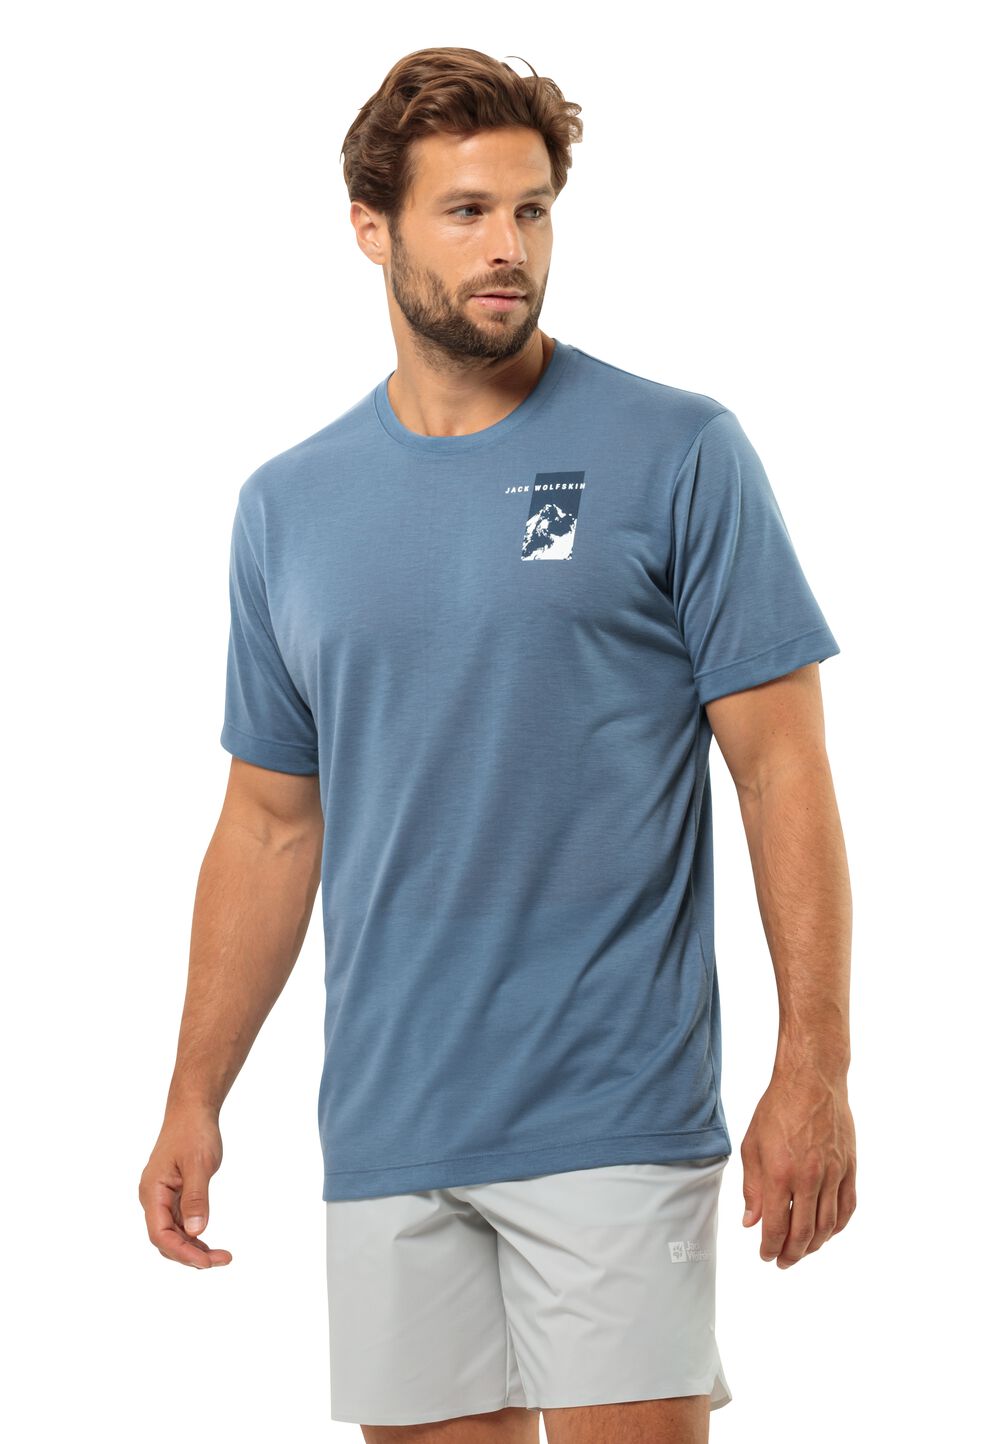 Jack Wolfskin Vonnan S S Graphic T-Shirt Men Functioneel shirt Heren L elemental blue elemental blue